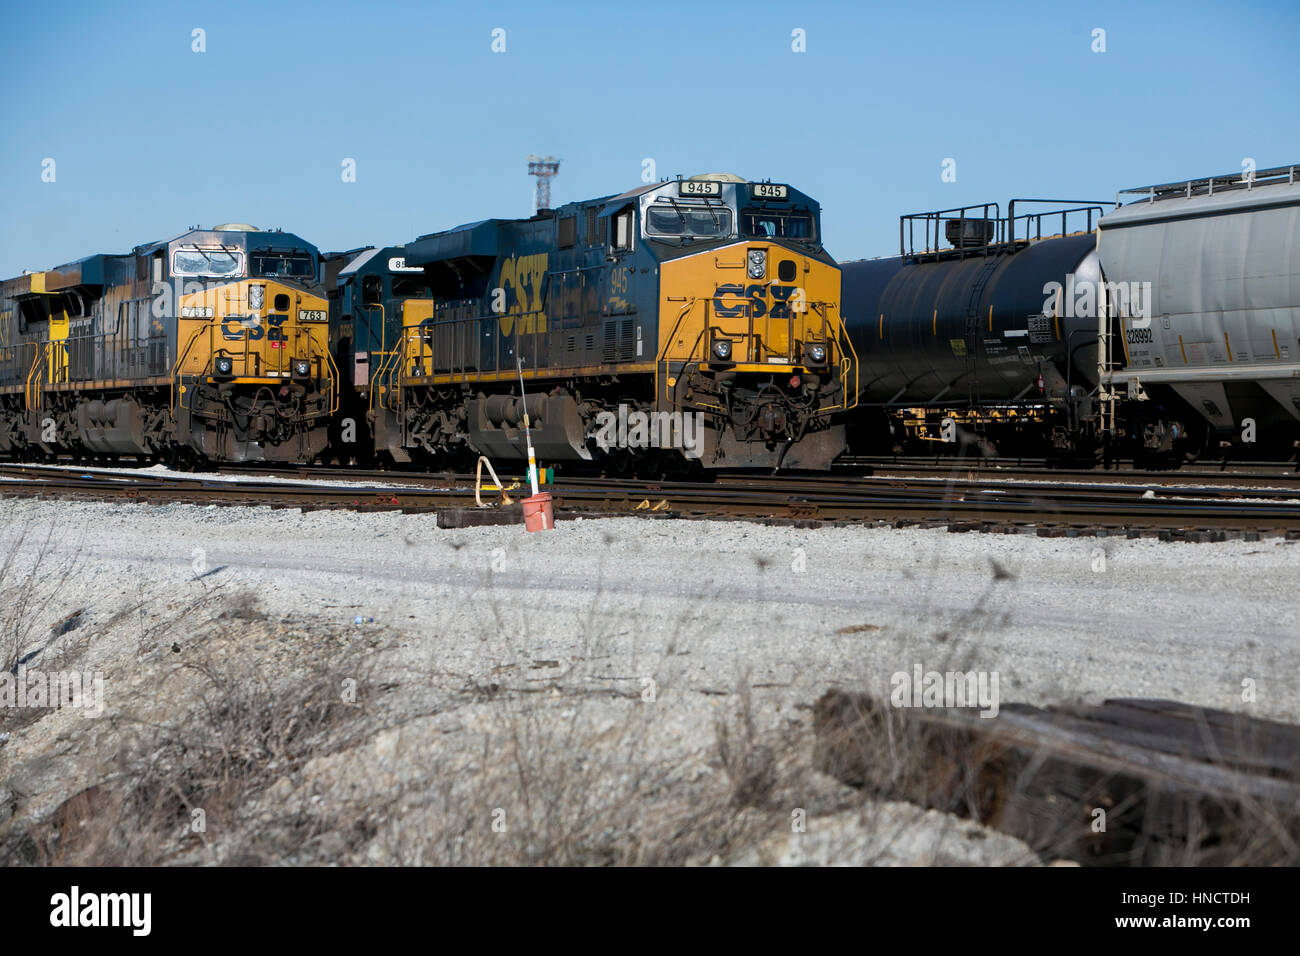 CSX Lokomotiven und Zug Autos auf einem Abstellgleis in Nashville, Tennessee am 4. Februar 2017 Eisenbahn. Stockfoto